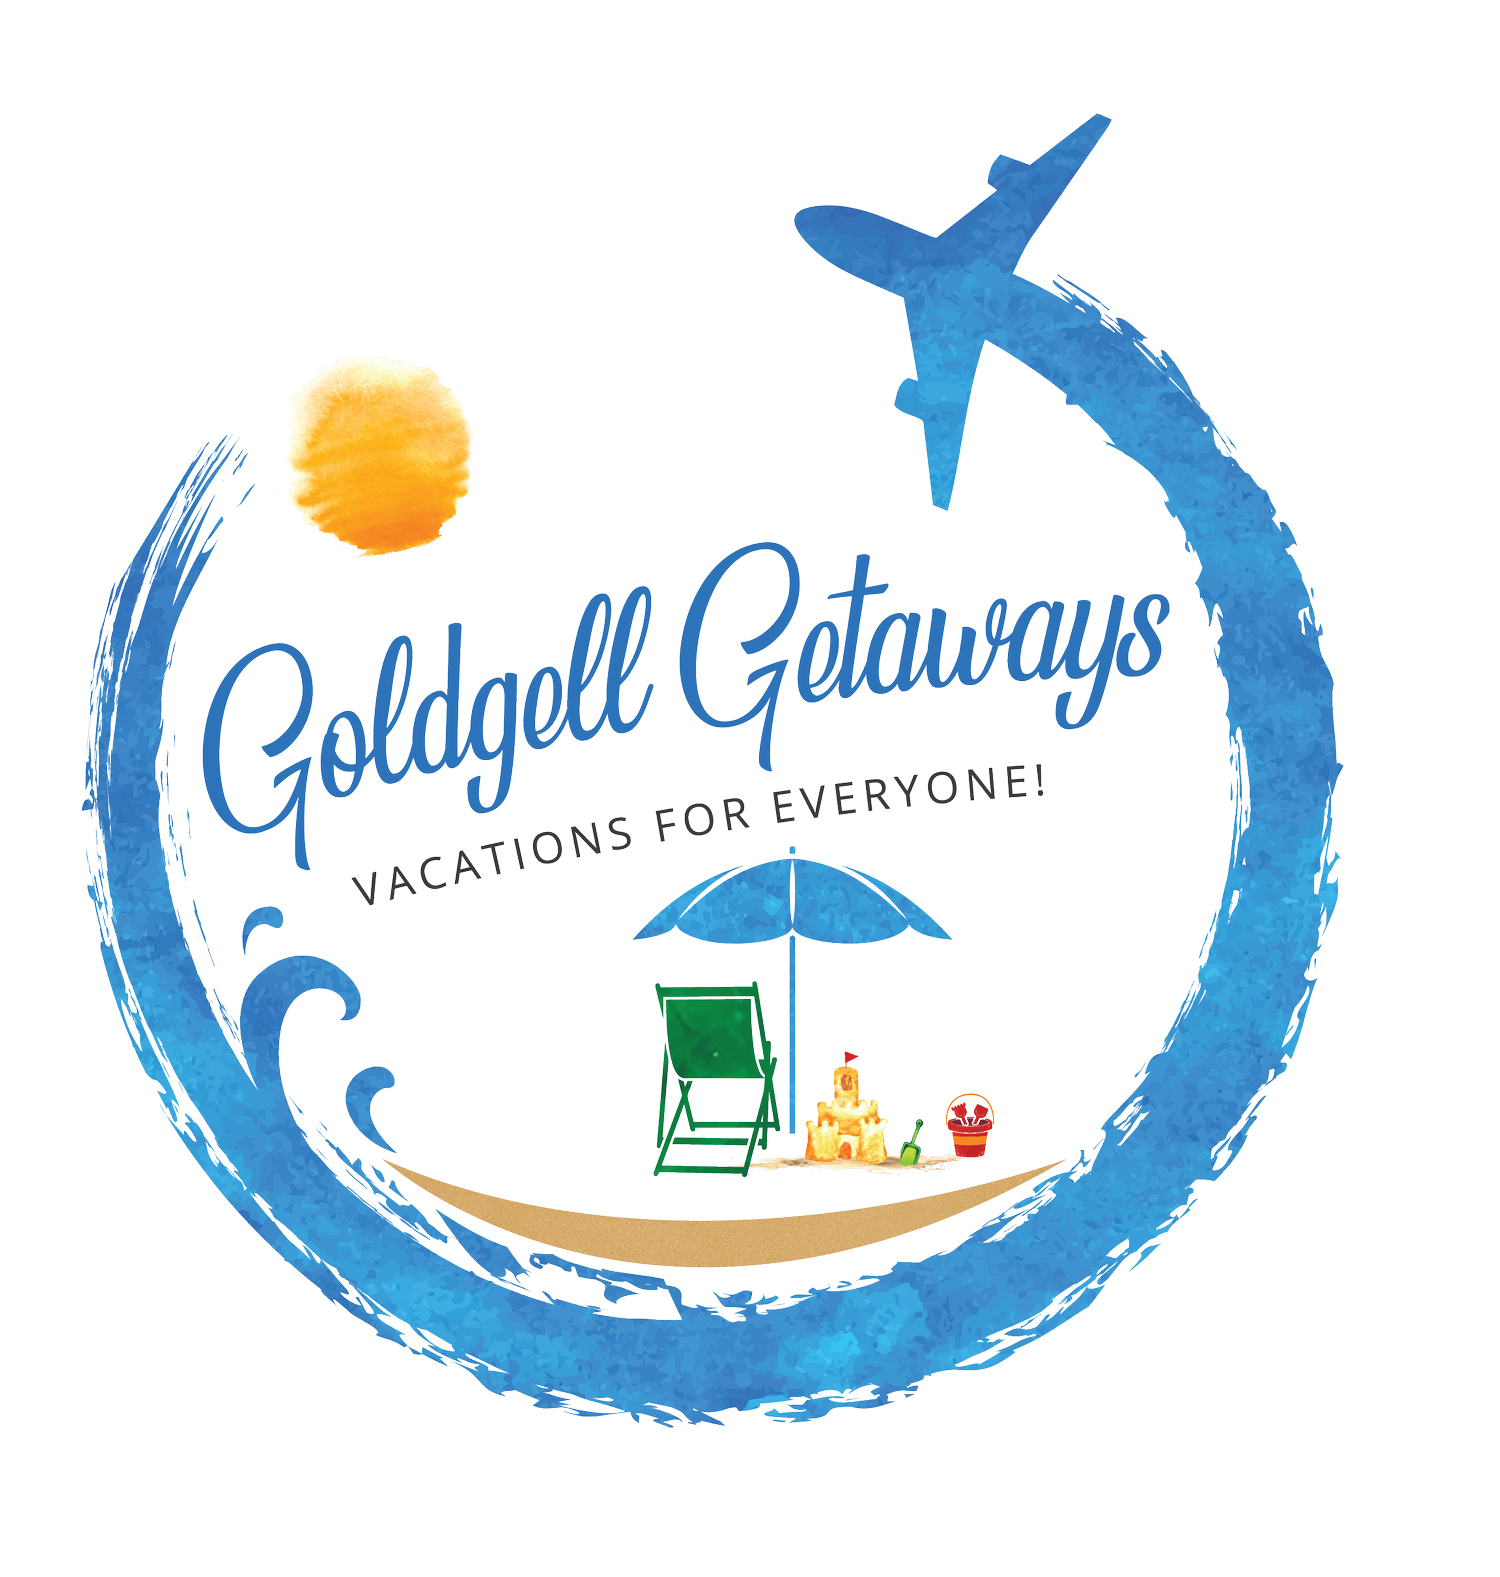 Goldgell Getaways